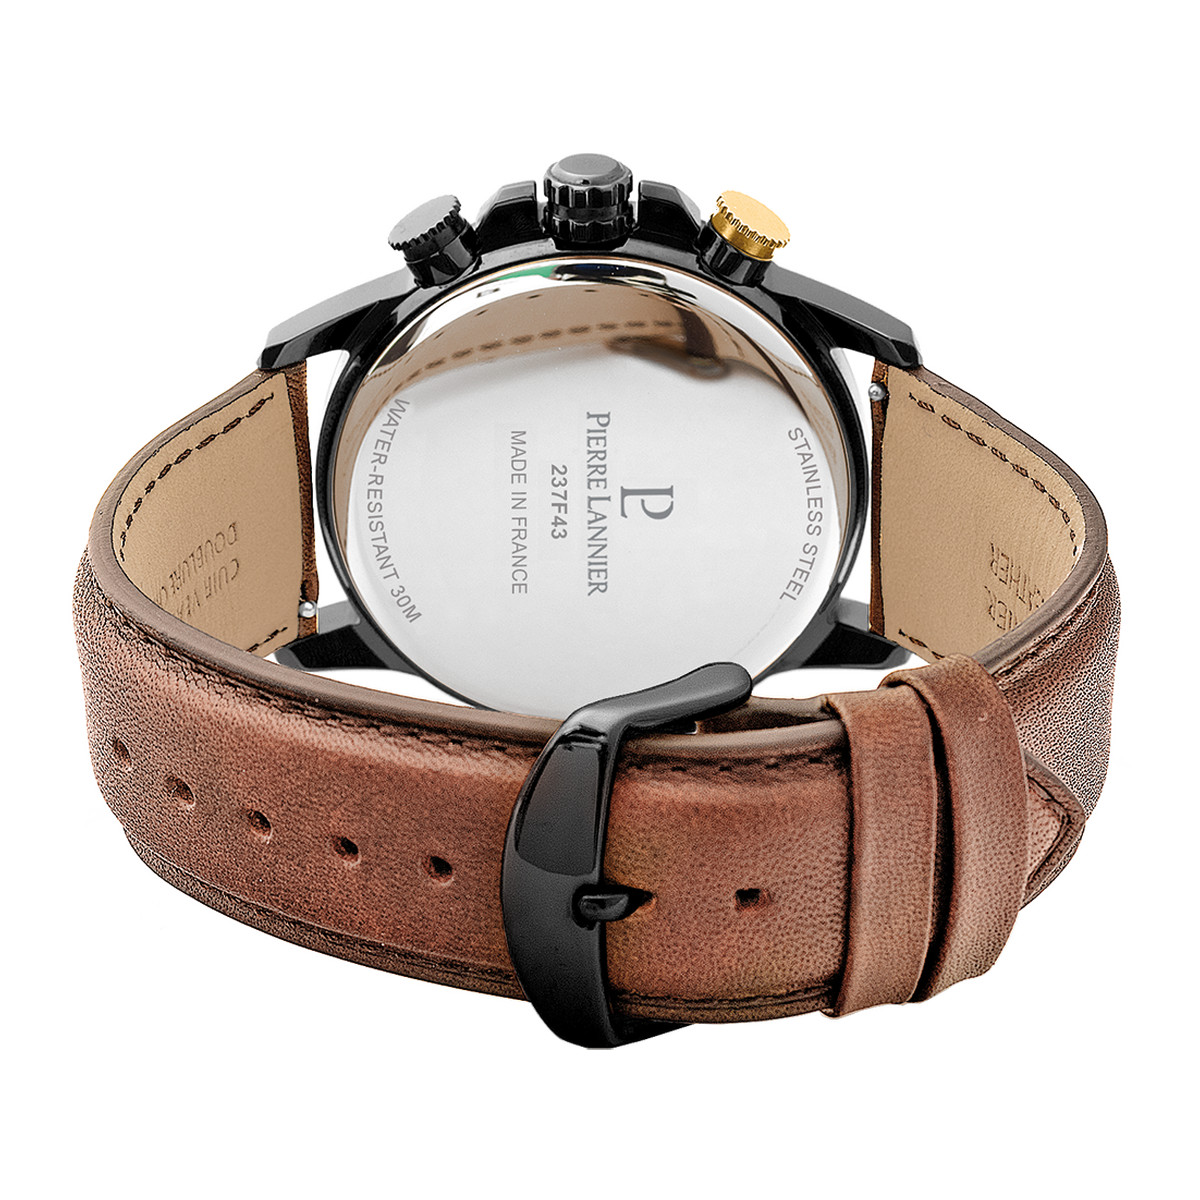 Montre PIERRE LANNIER Sentinelle homme chronographe acier noir  bracelet cuir brun - vue 3